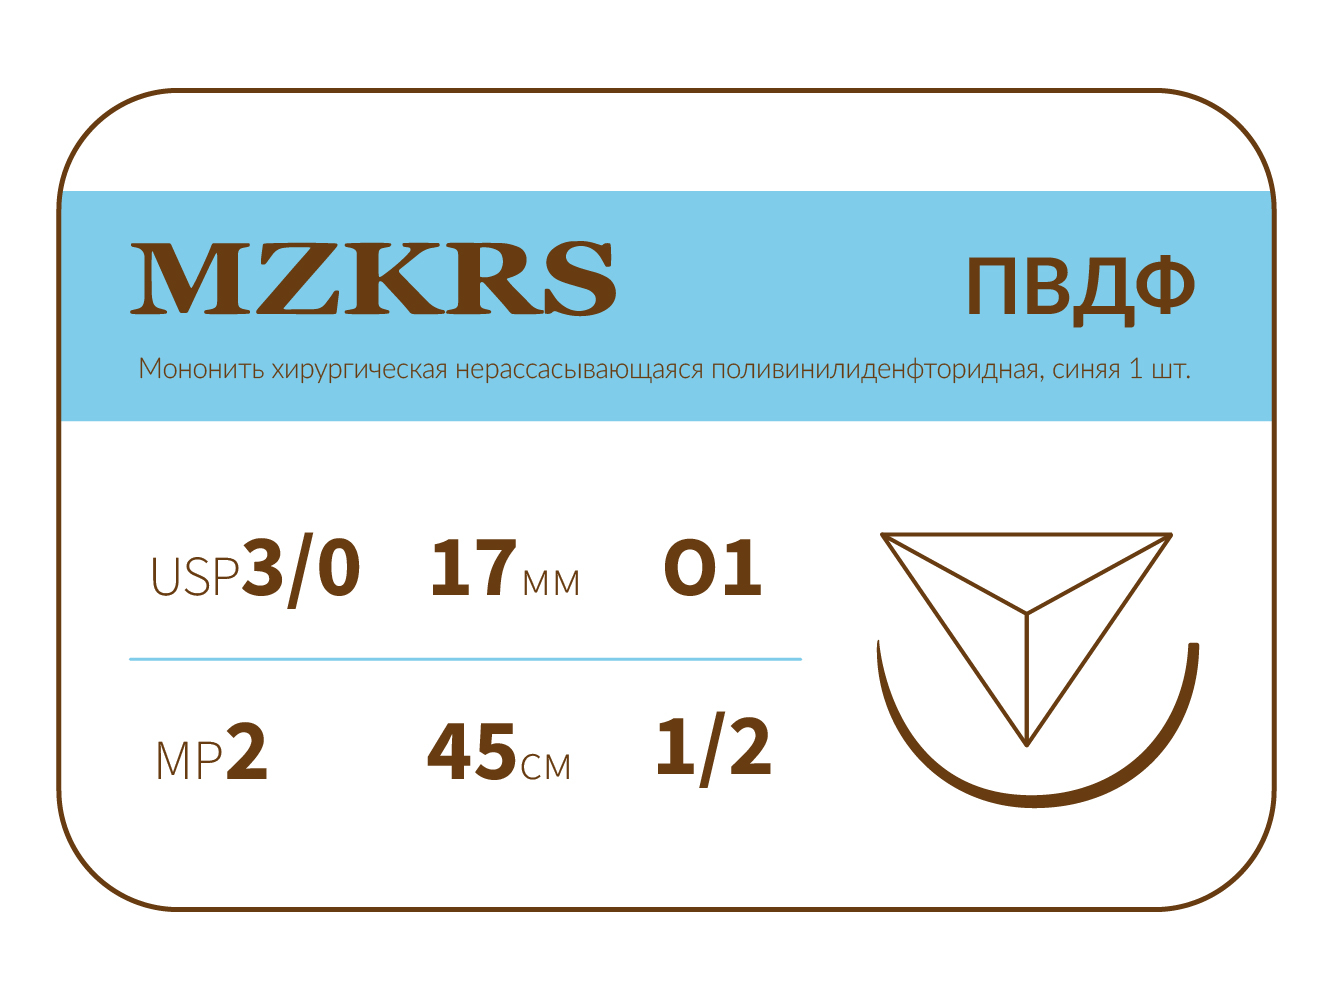 1712О1-Premium-3/0 (2)45 ПВДФ хирургическая нить поливинилиденфторидная, MZKRS (Россия)